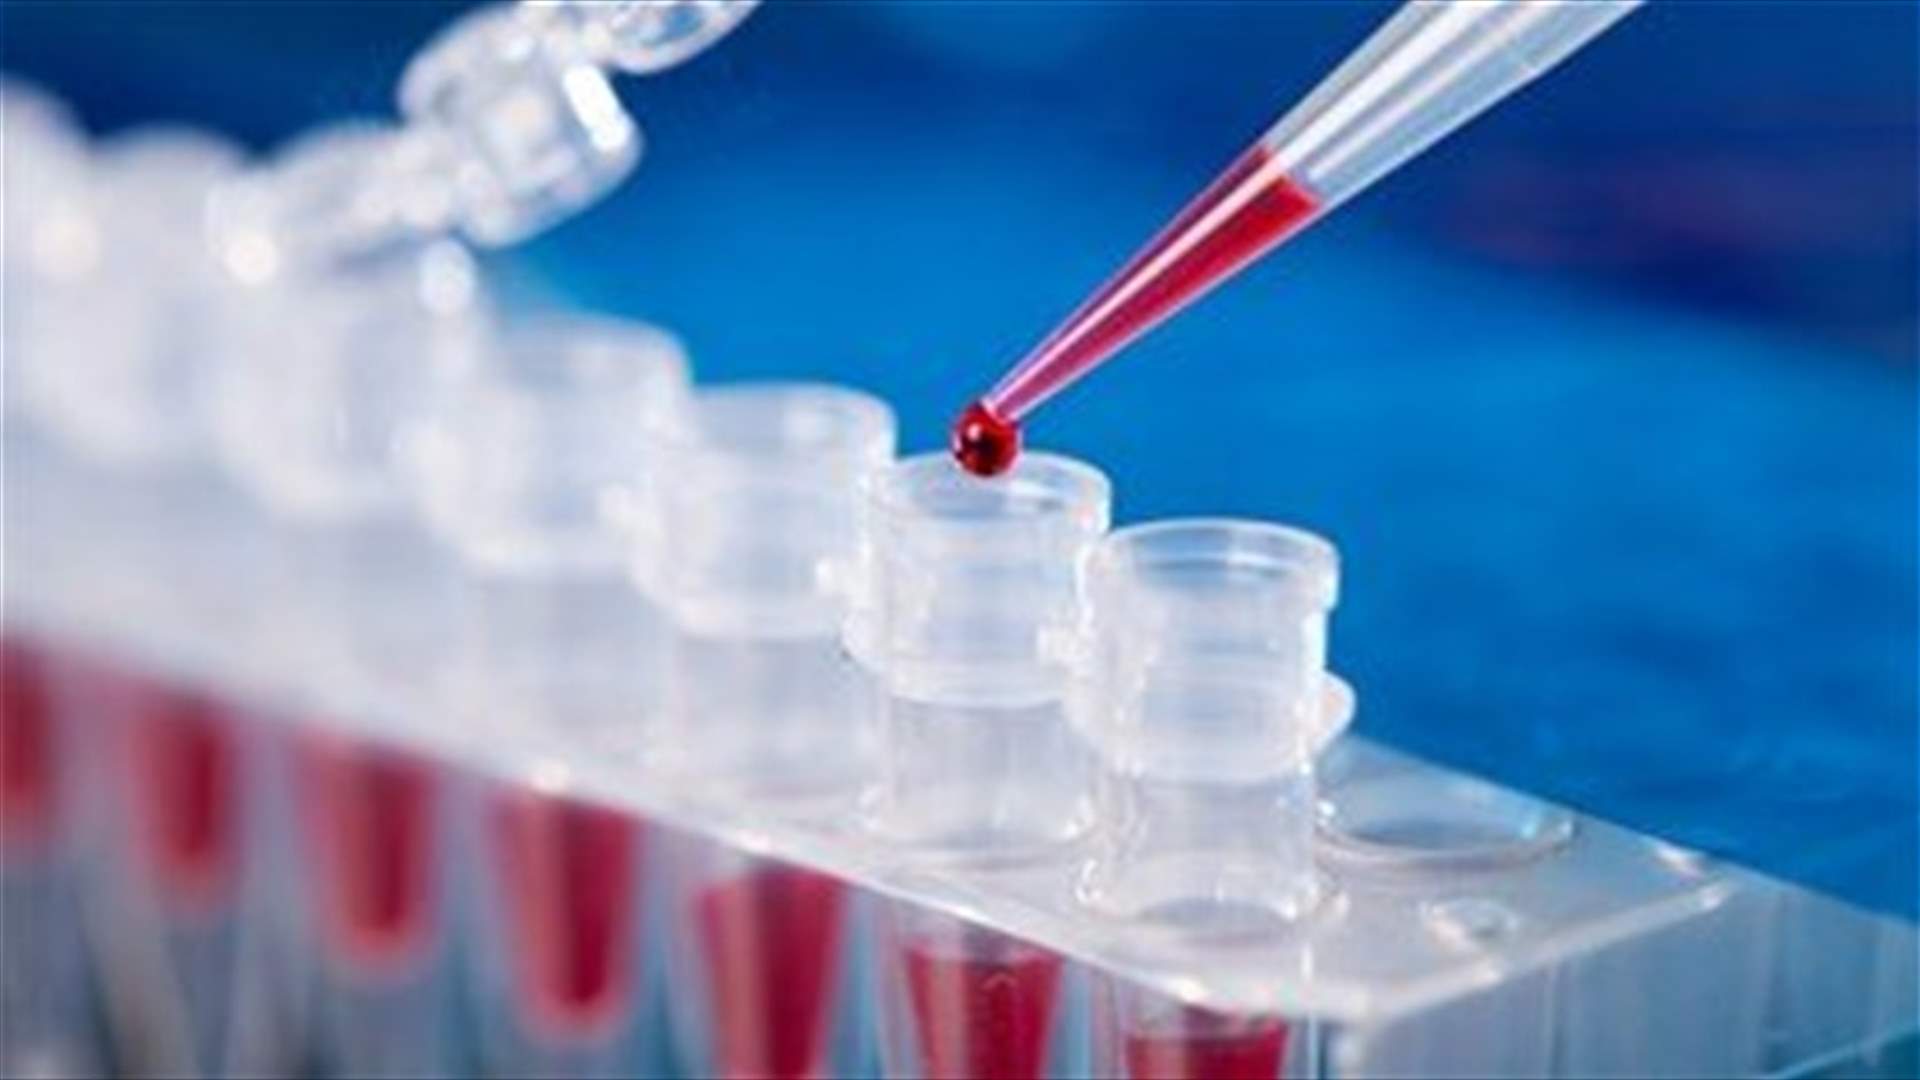 Lebanon registers 17 new Coronavirus cases-Health Ministry